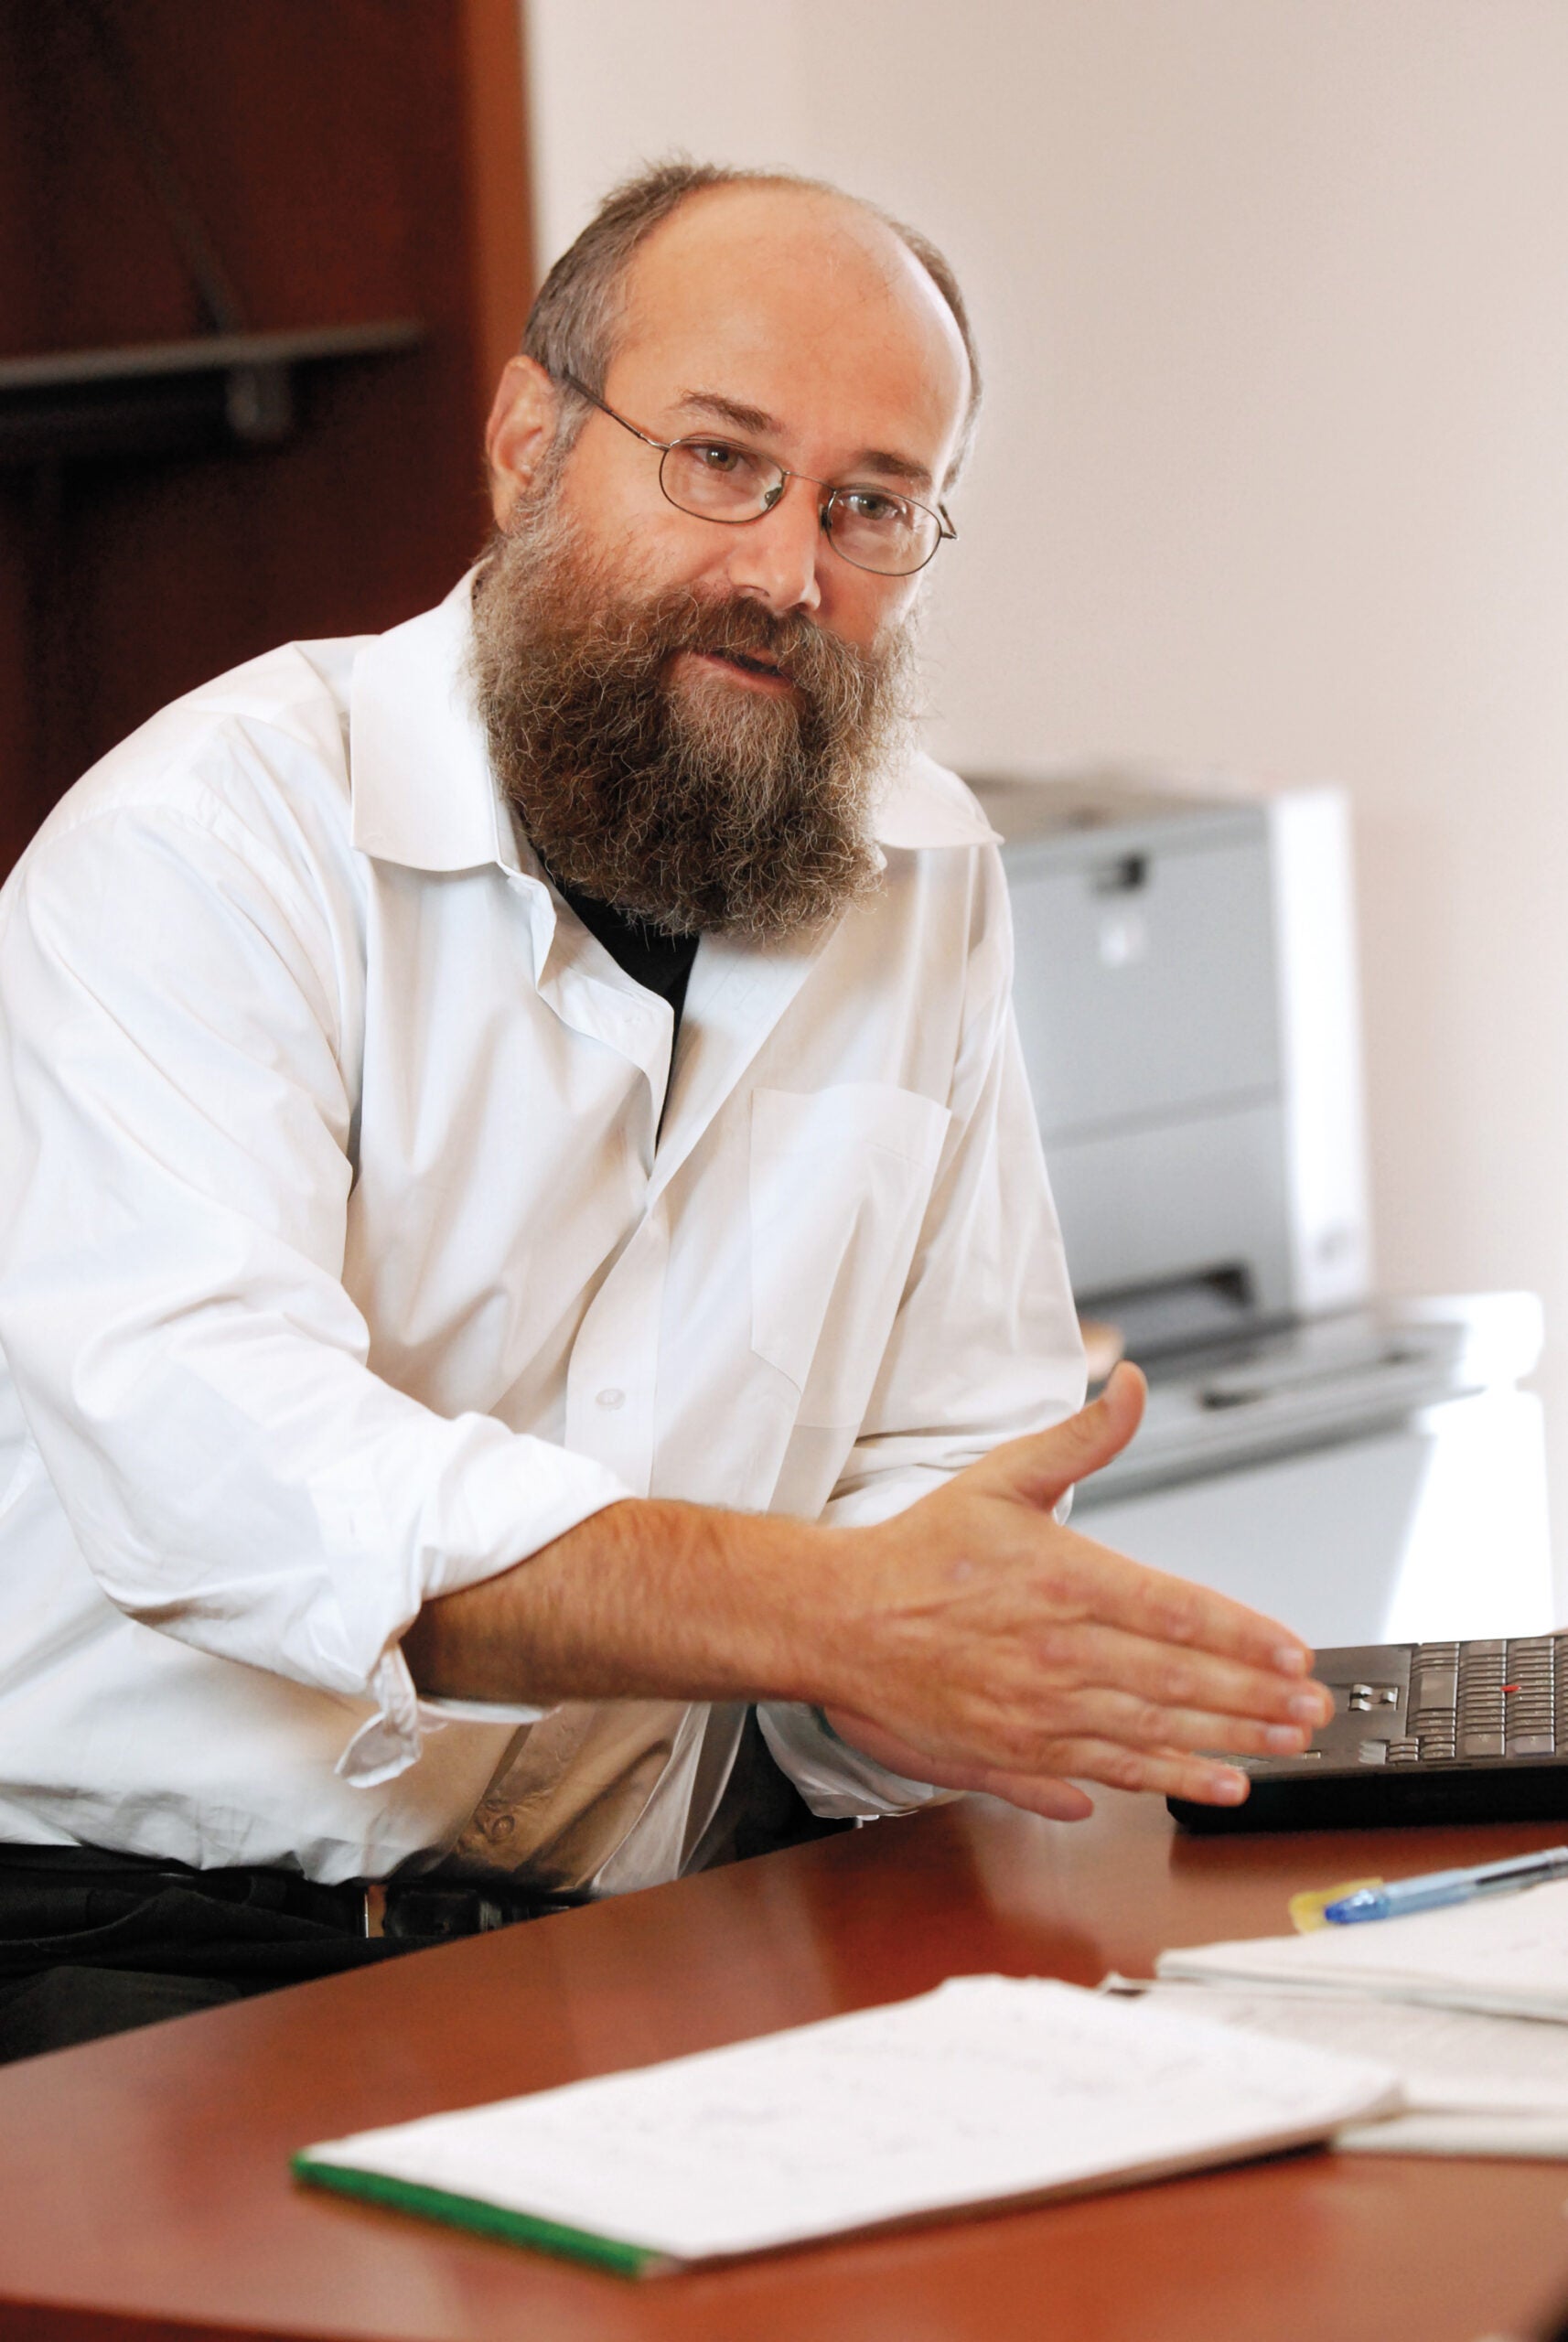 HLS Professor Yochai Benkler